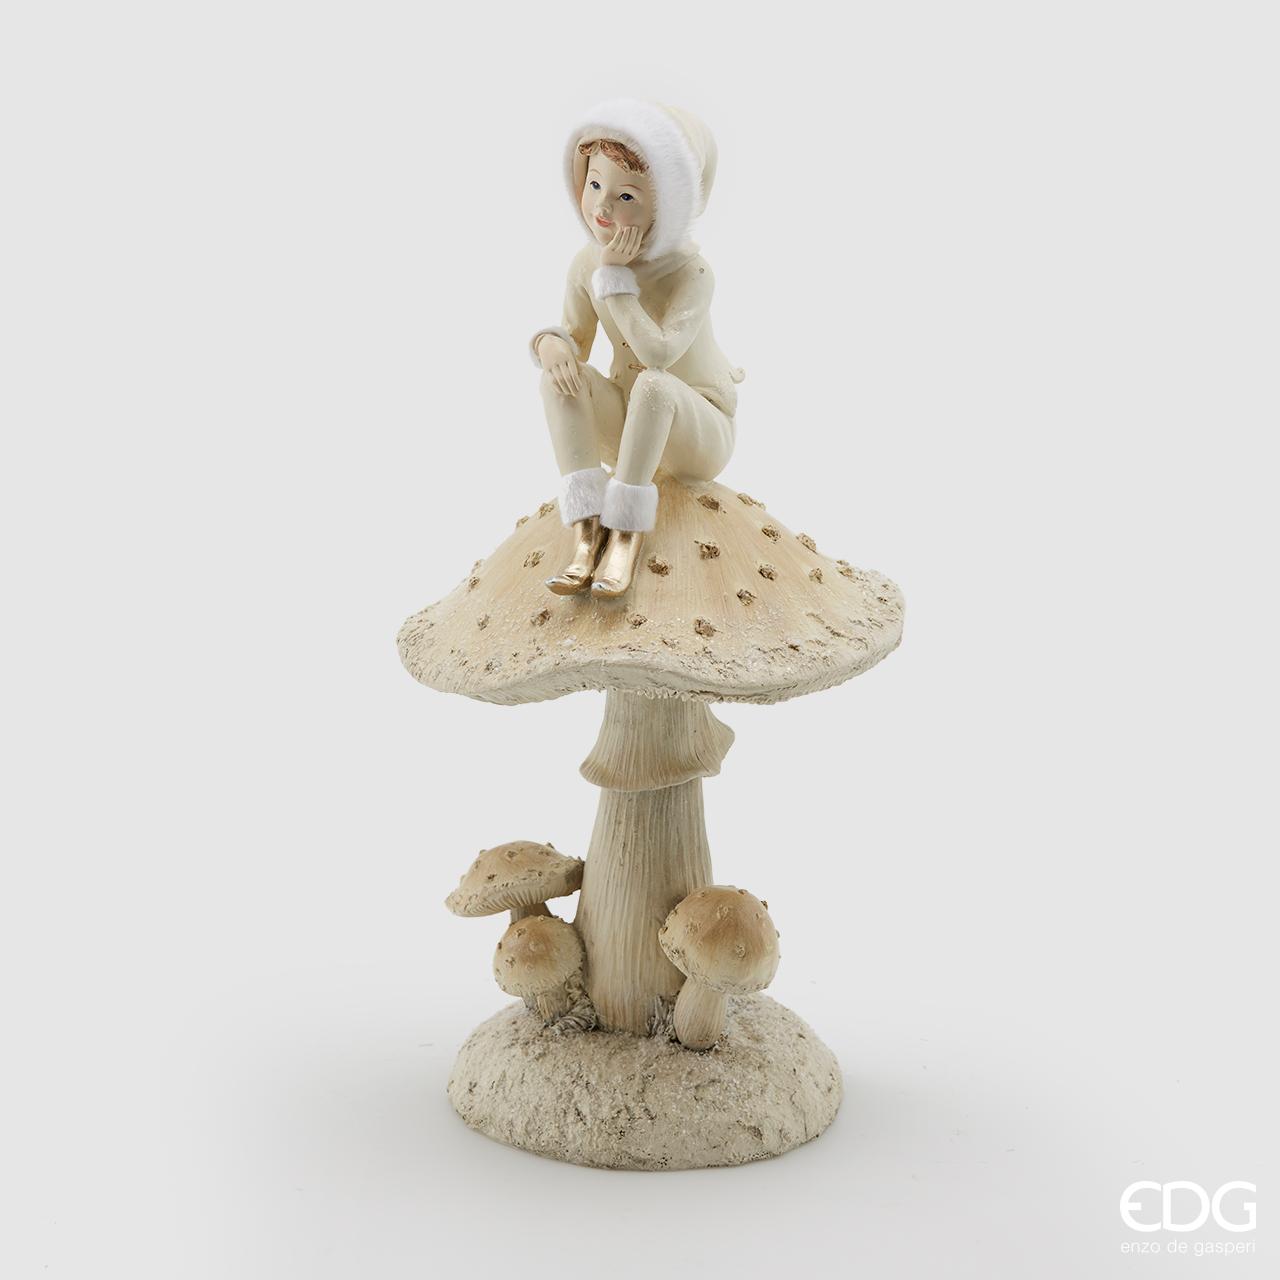 Bambino su fungo in resina decorata con glitter e pelliccia bianca. Dimensioni: cm 16 x 32 h